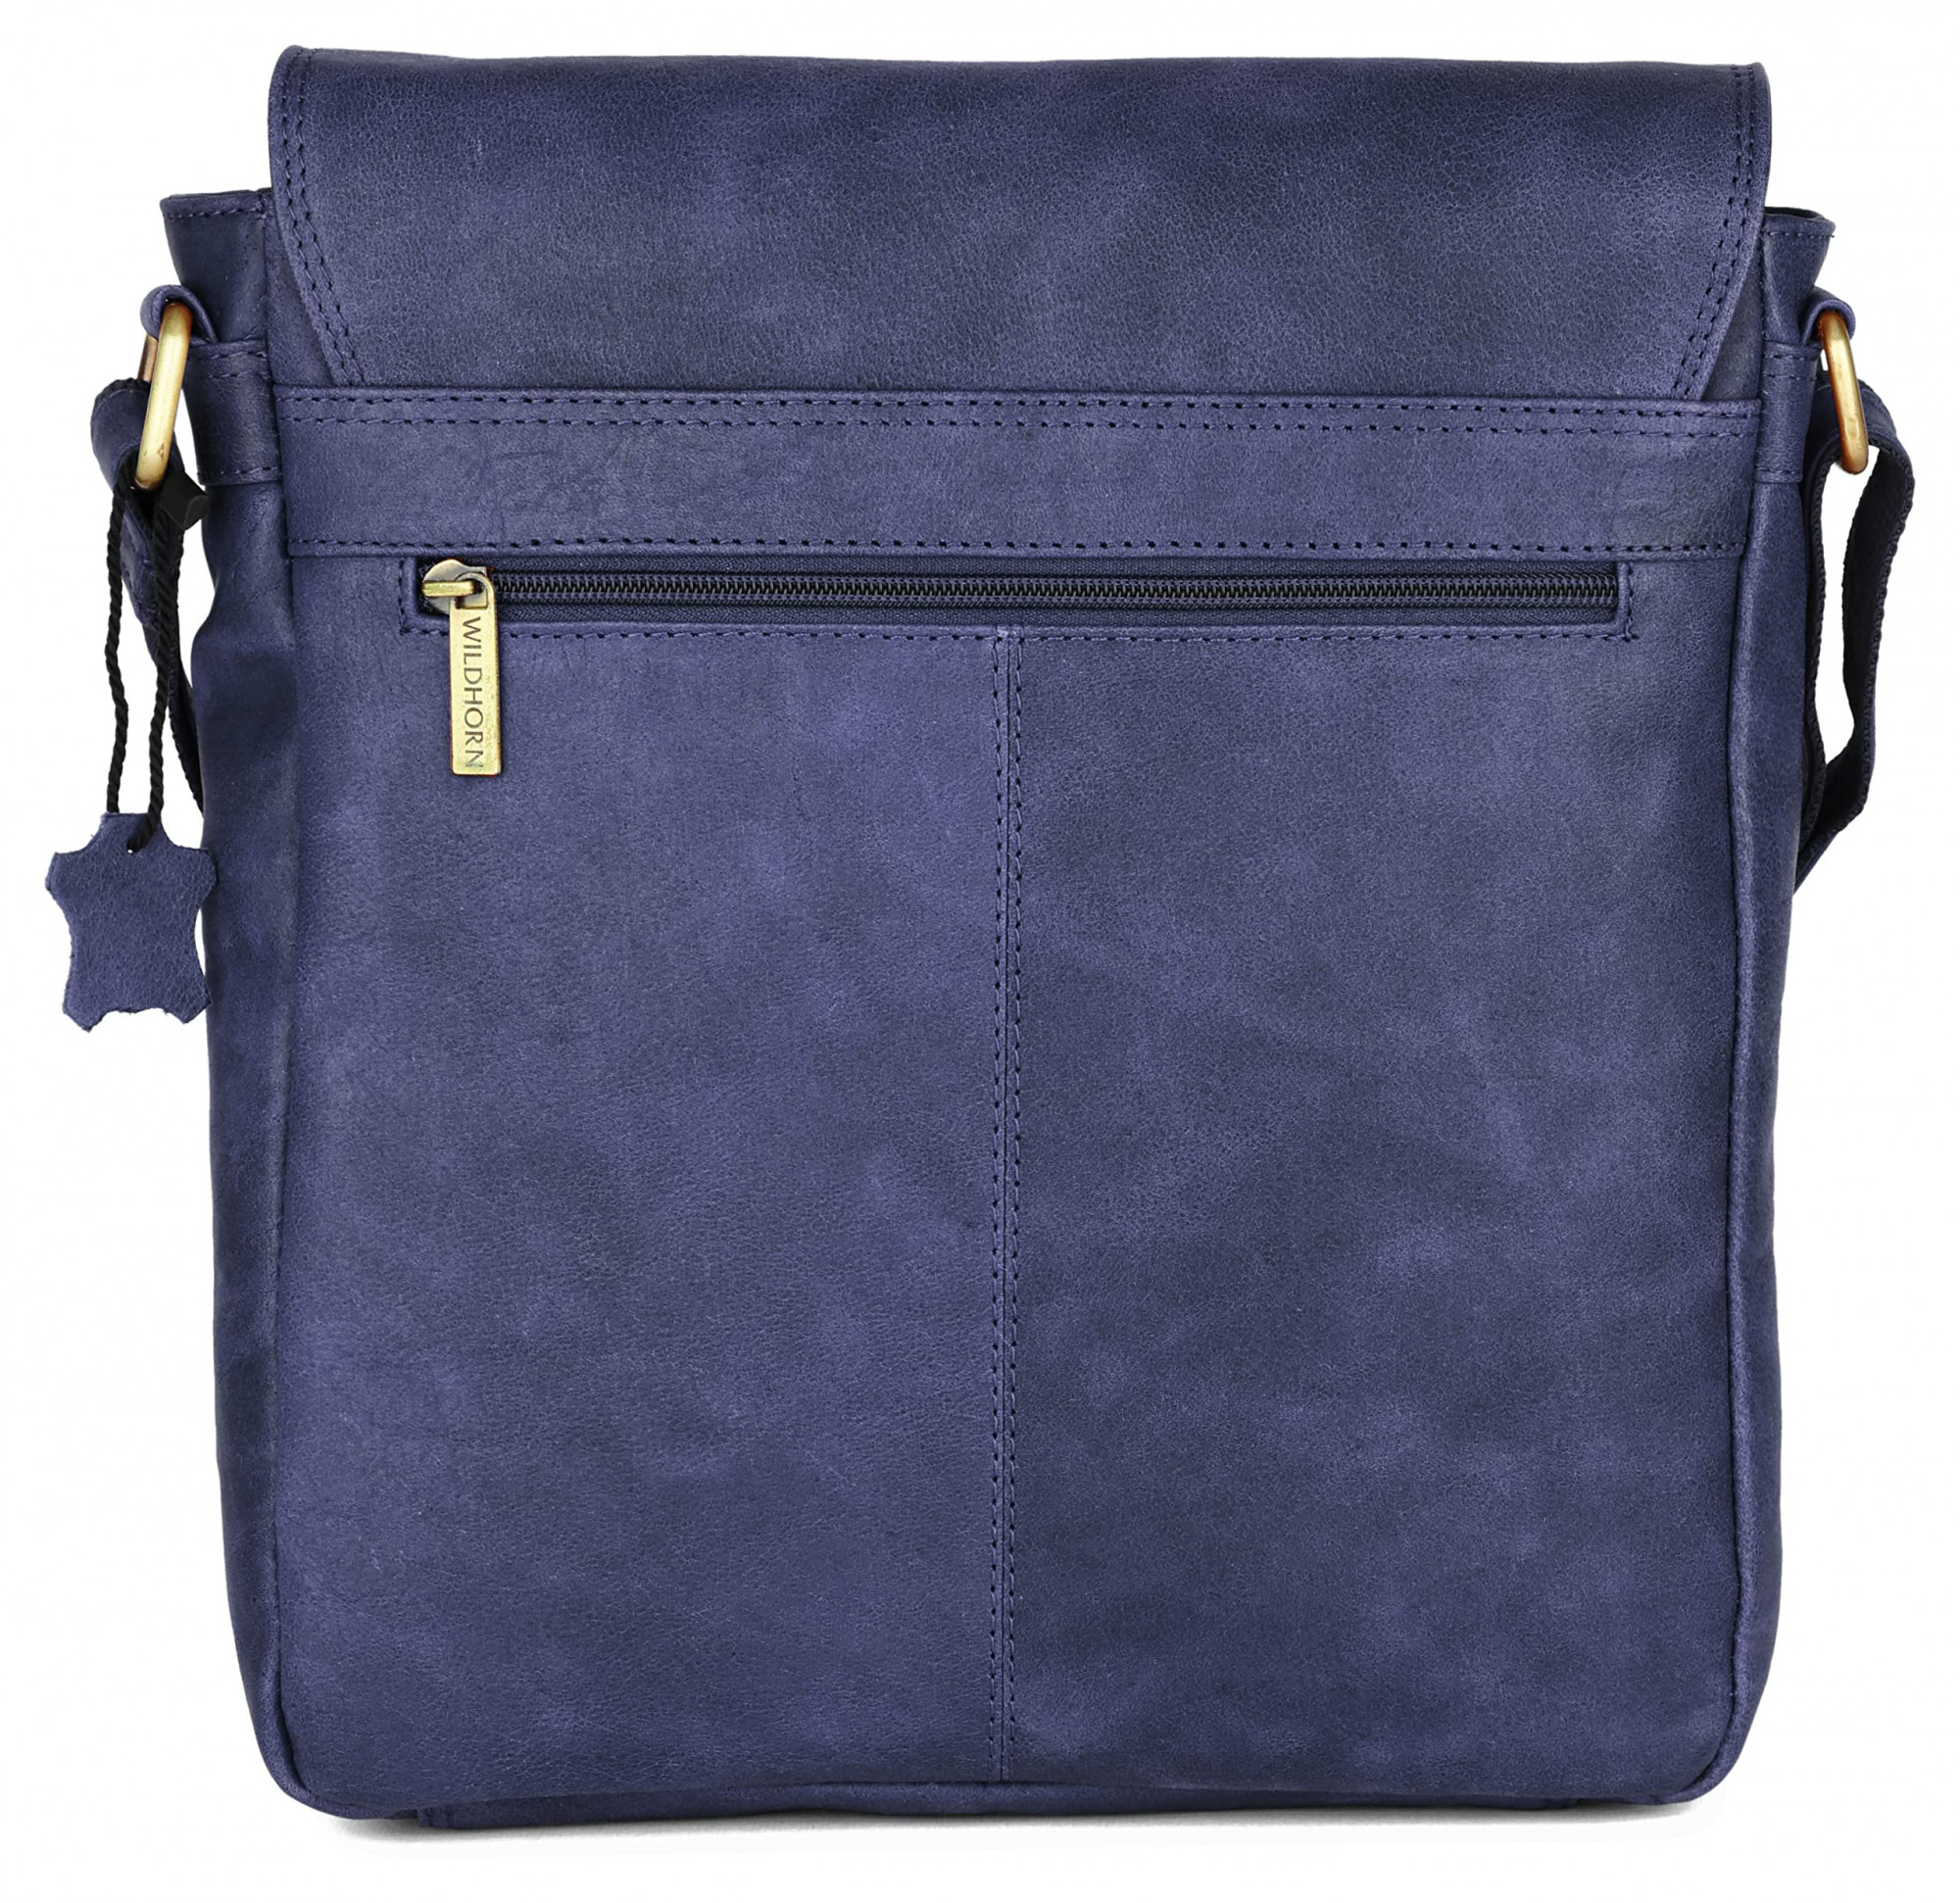 WildHorn Leather 11 inch Sling Messenger Bag for Men I Multipurpose Crossbody Bag I Travel Bag with Adjustable Strap (Distressed Blue)